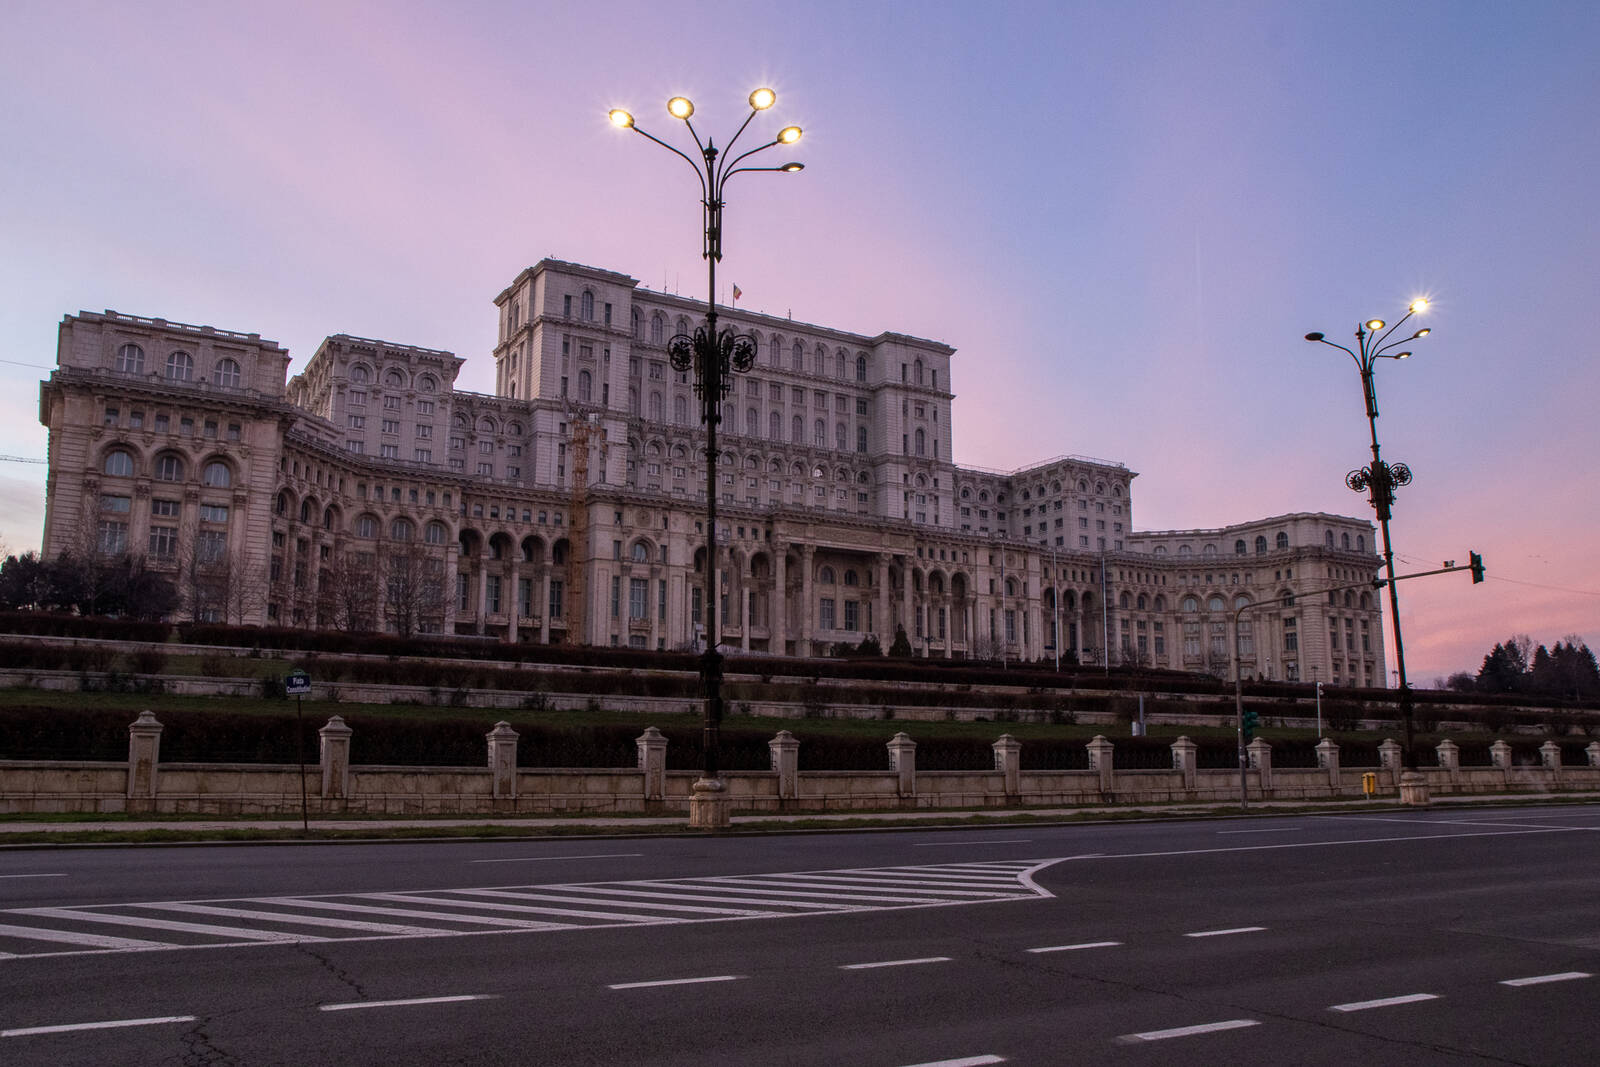 Image of Piata Constitutiei (Constitution Square) by Janina Wilde